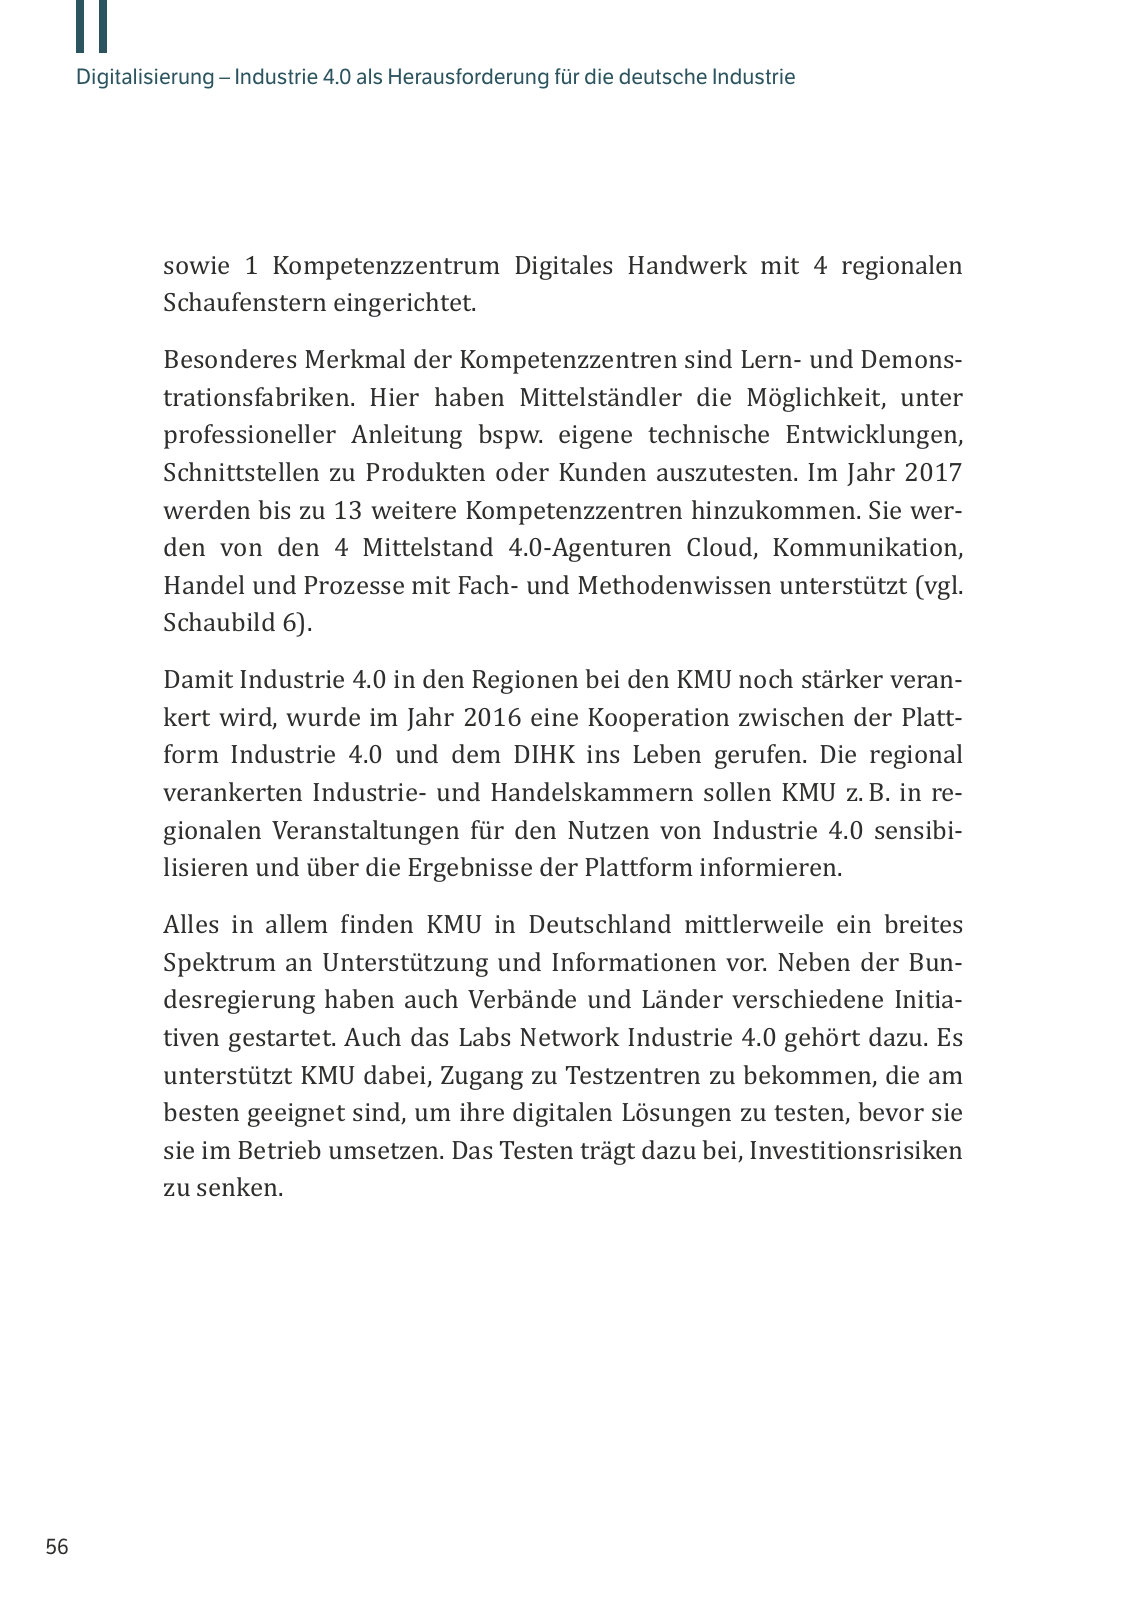 Vorschau M. Vassiliadis // Digitalisierung und Industrie 4.0 Seite 56